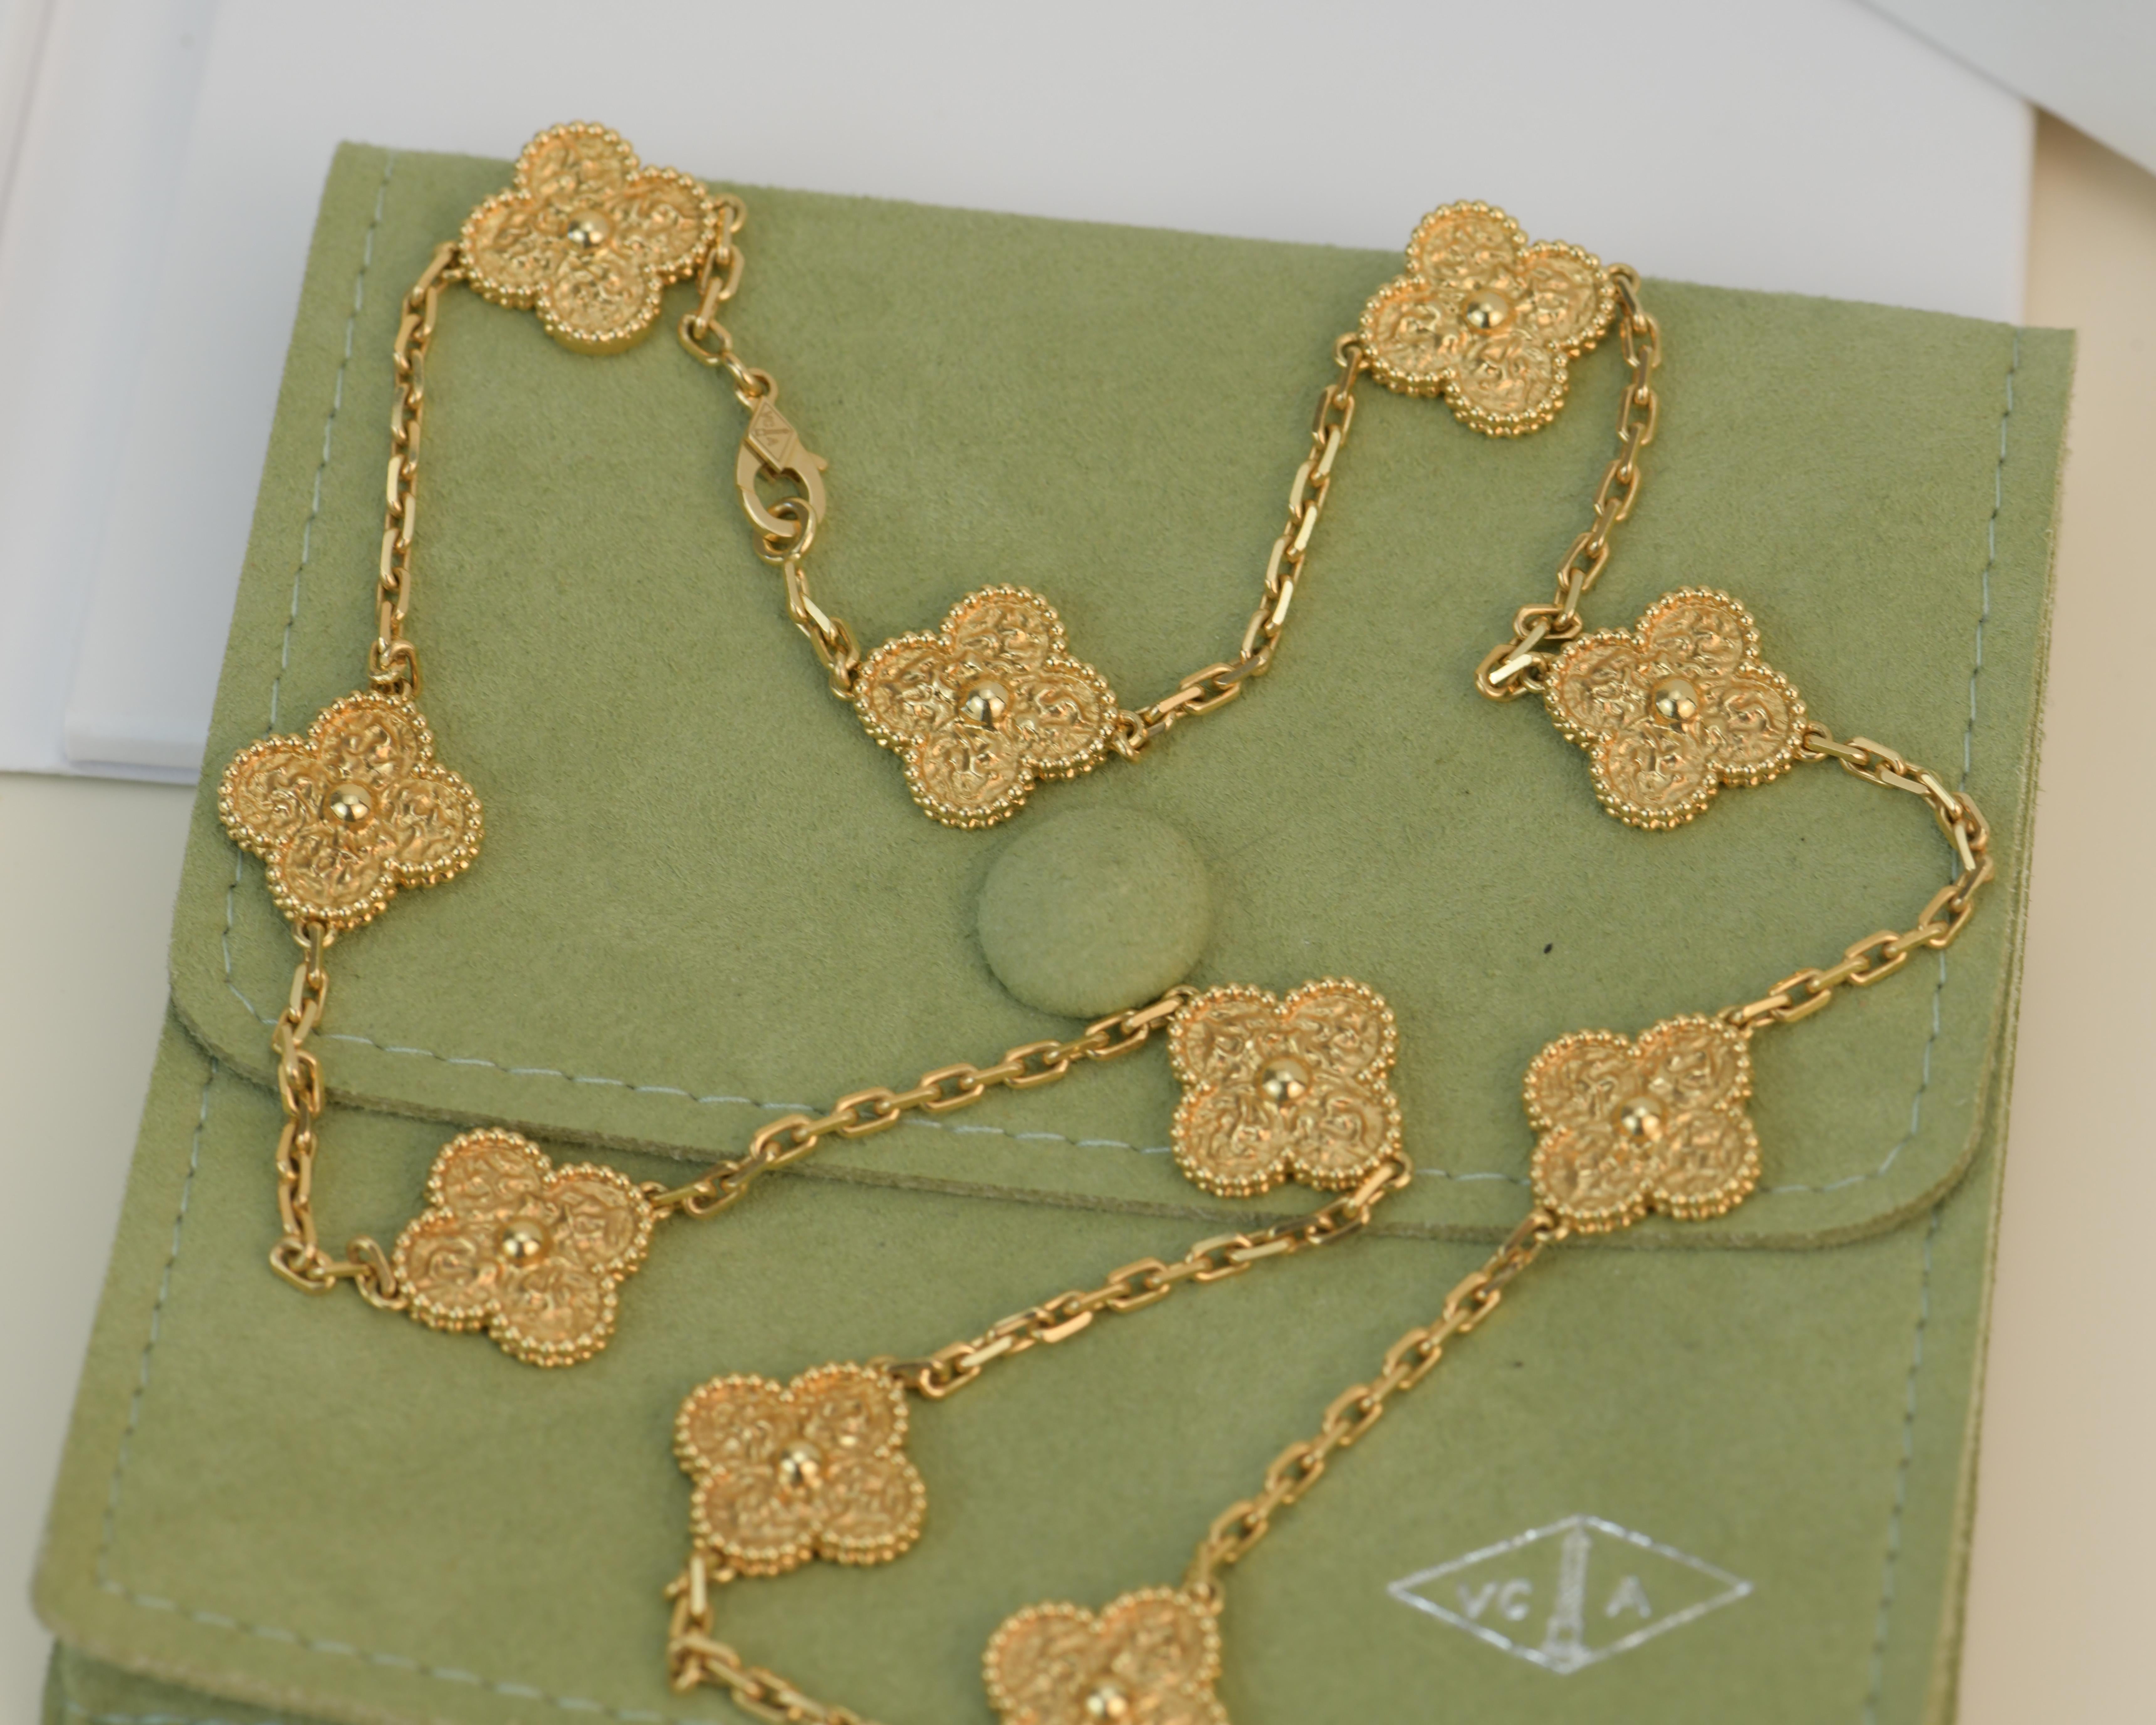 van cleef 10 motif necklace gold